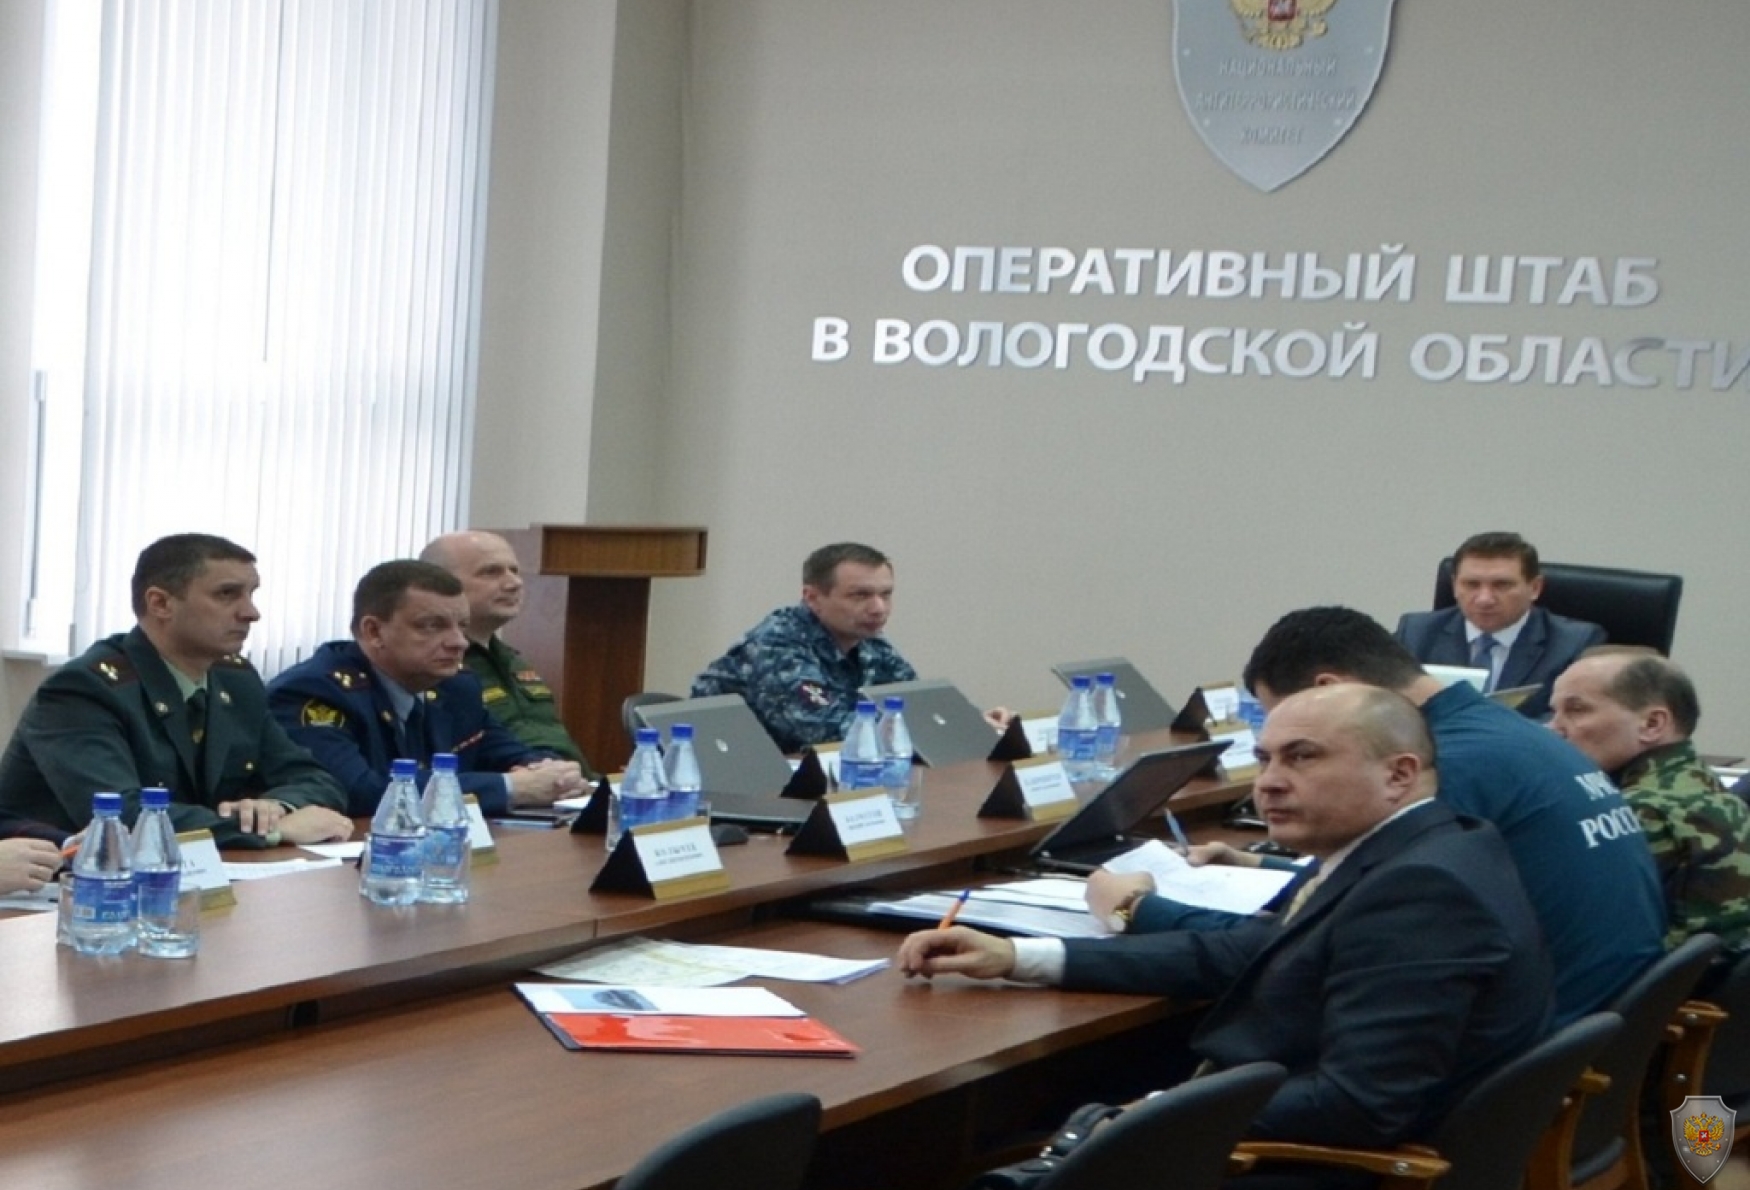 Работа оперативного штаба в Вологодской области